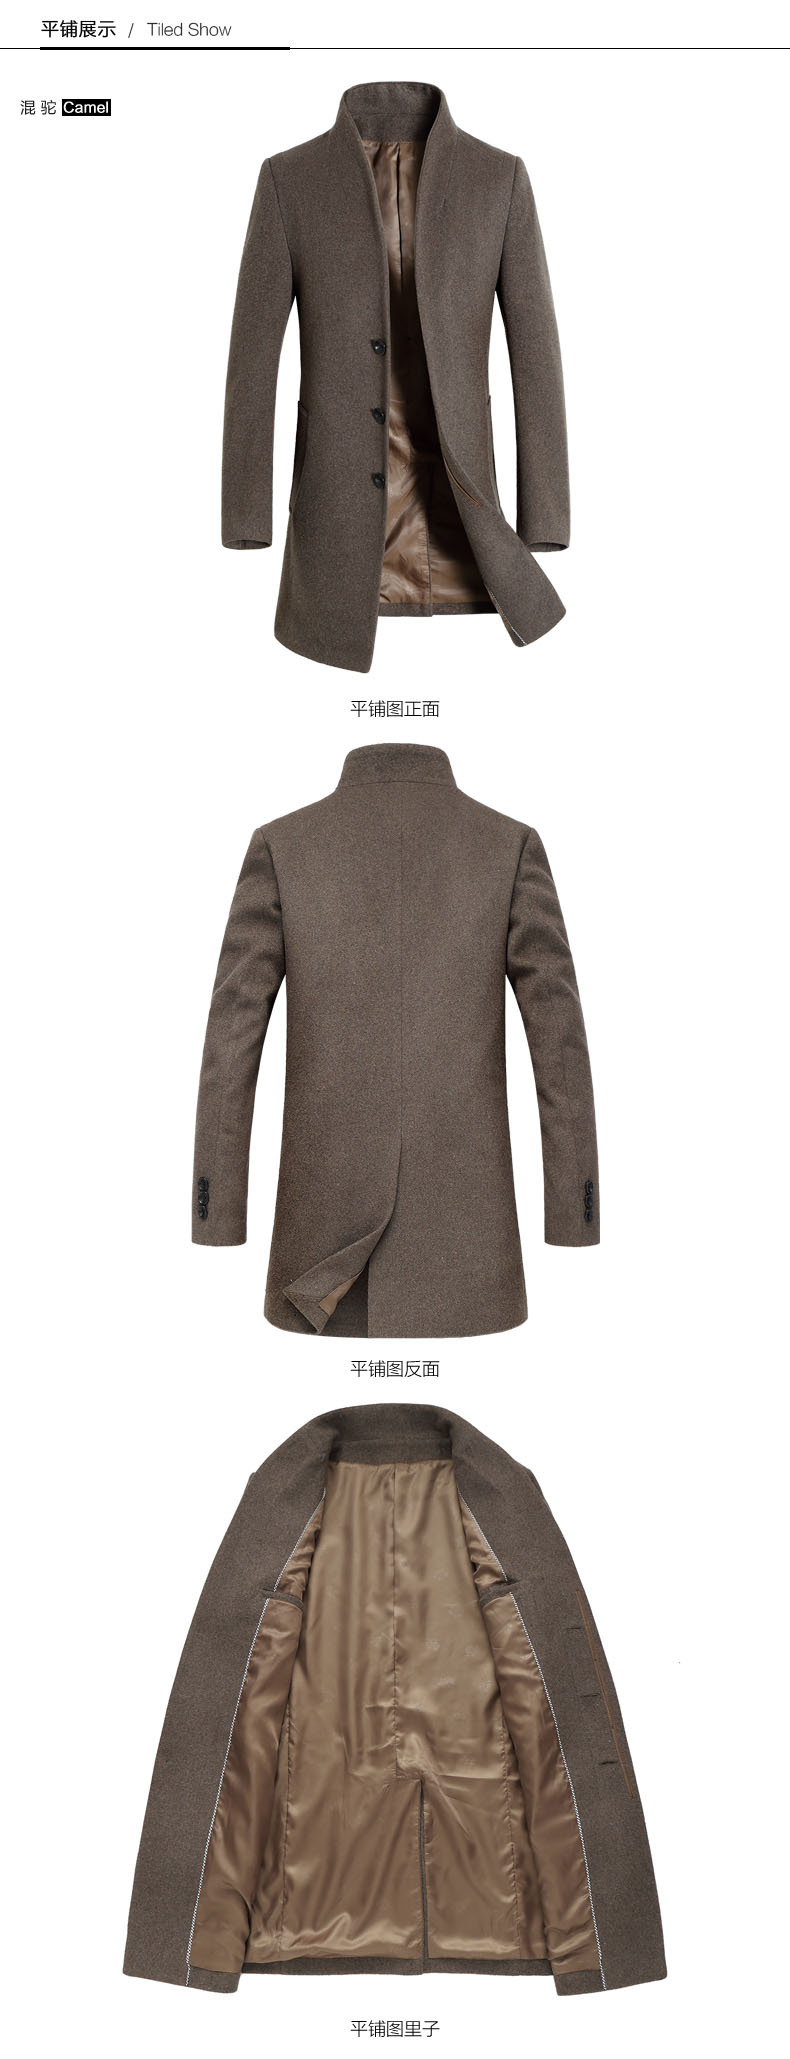 司奇隆 秋冬新款男式羊毛呢大衣 中长款青年韩版修身男装风衣外套1681